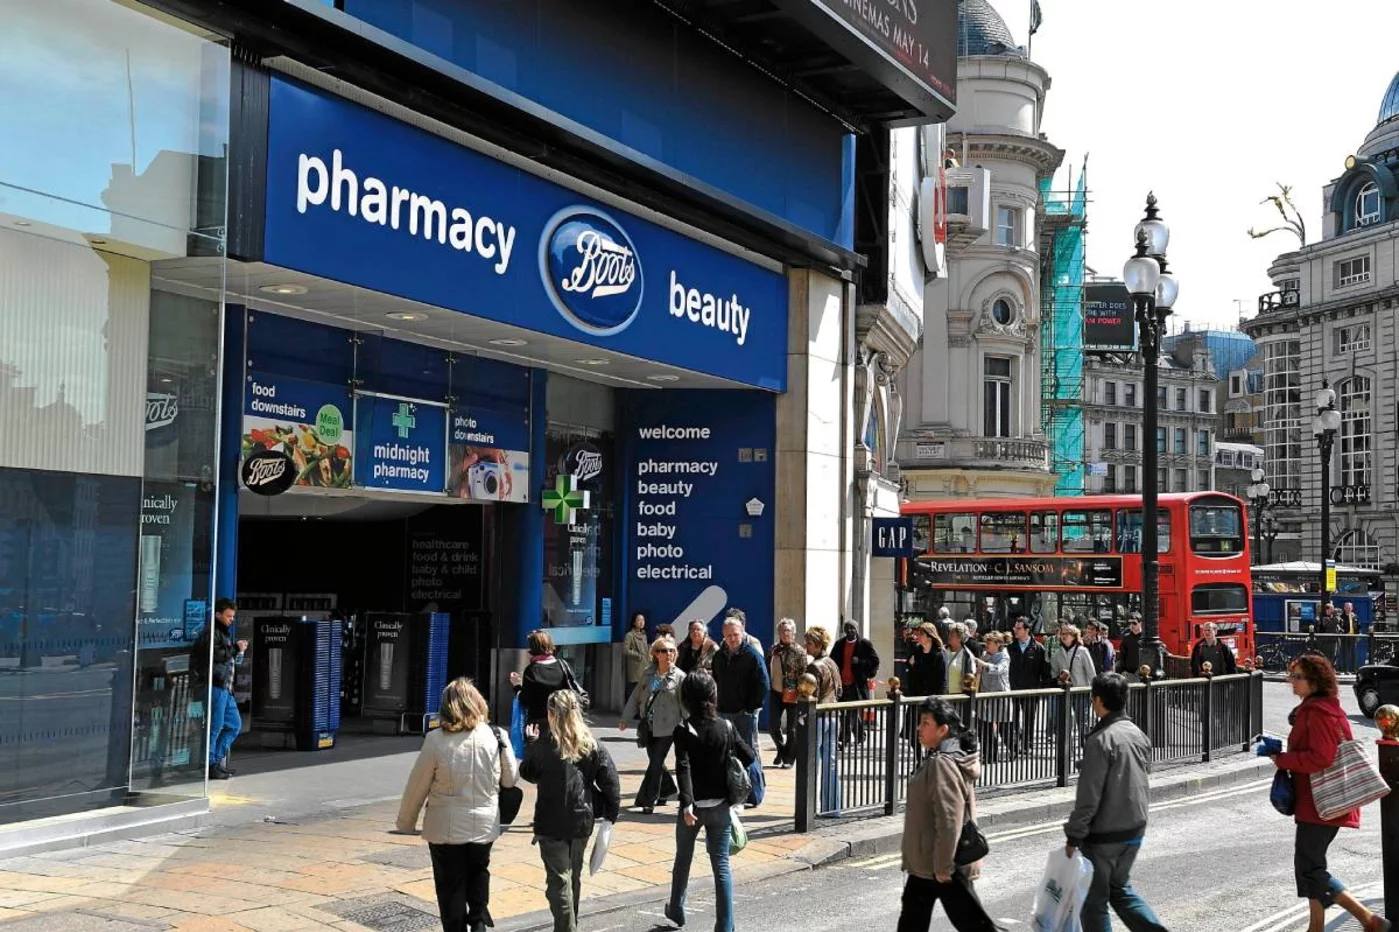 La prescripción farmacéutica representa en Inglaterra el 49% de las recetas no médicas realizadas en el país. Foto: LAURENT ZYLBERMAN.